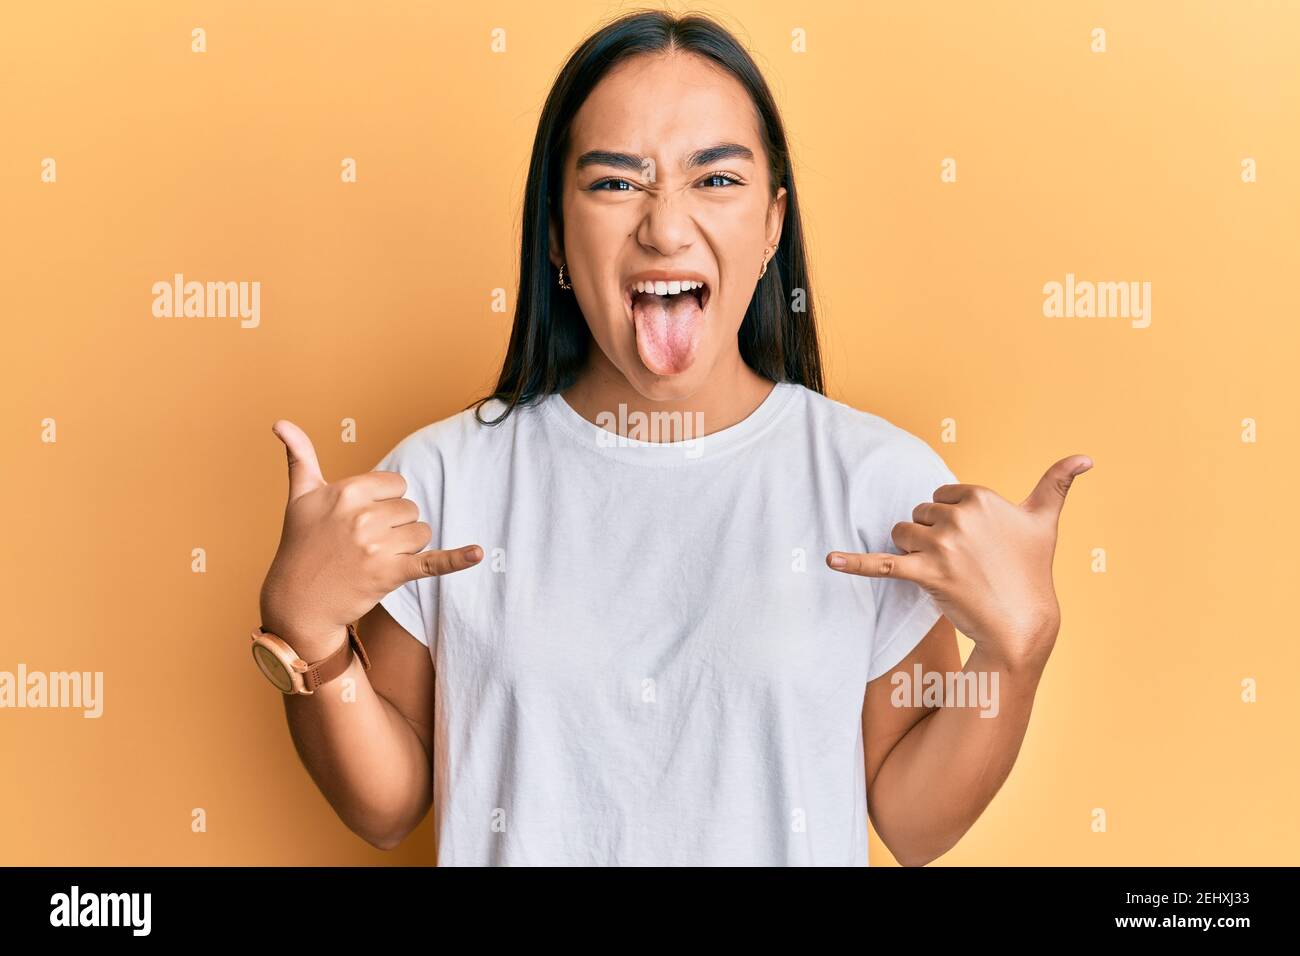 Junge asiatische Frau tun shaka Zeichen mit Händen heraus ragen Zunge  glücklich mit lustigen Ausdruck Stockfotografie - Alamy